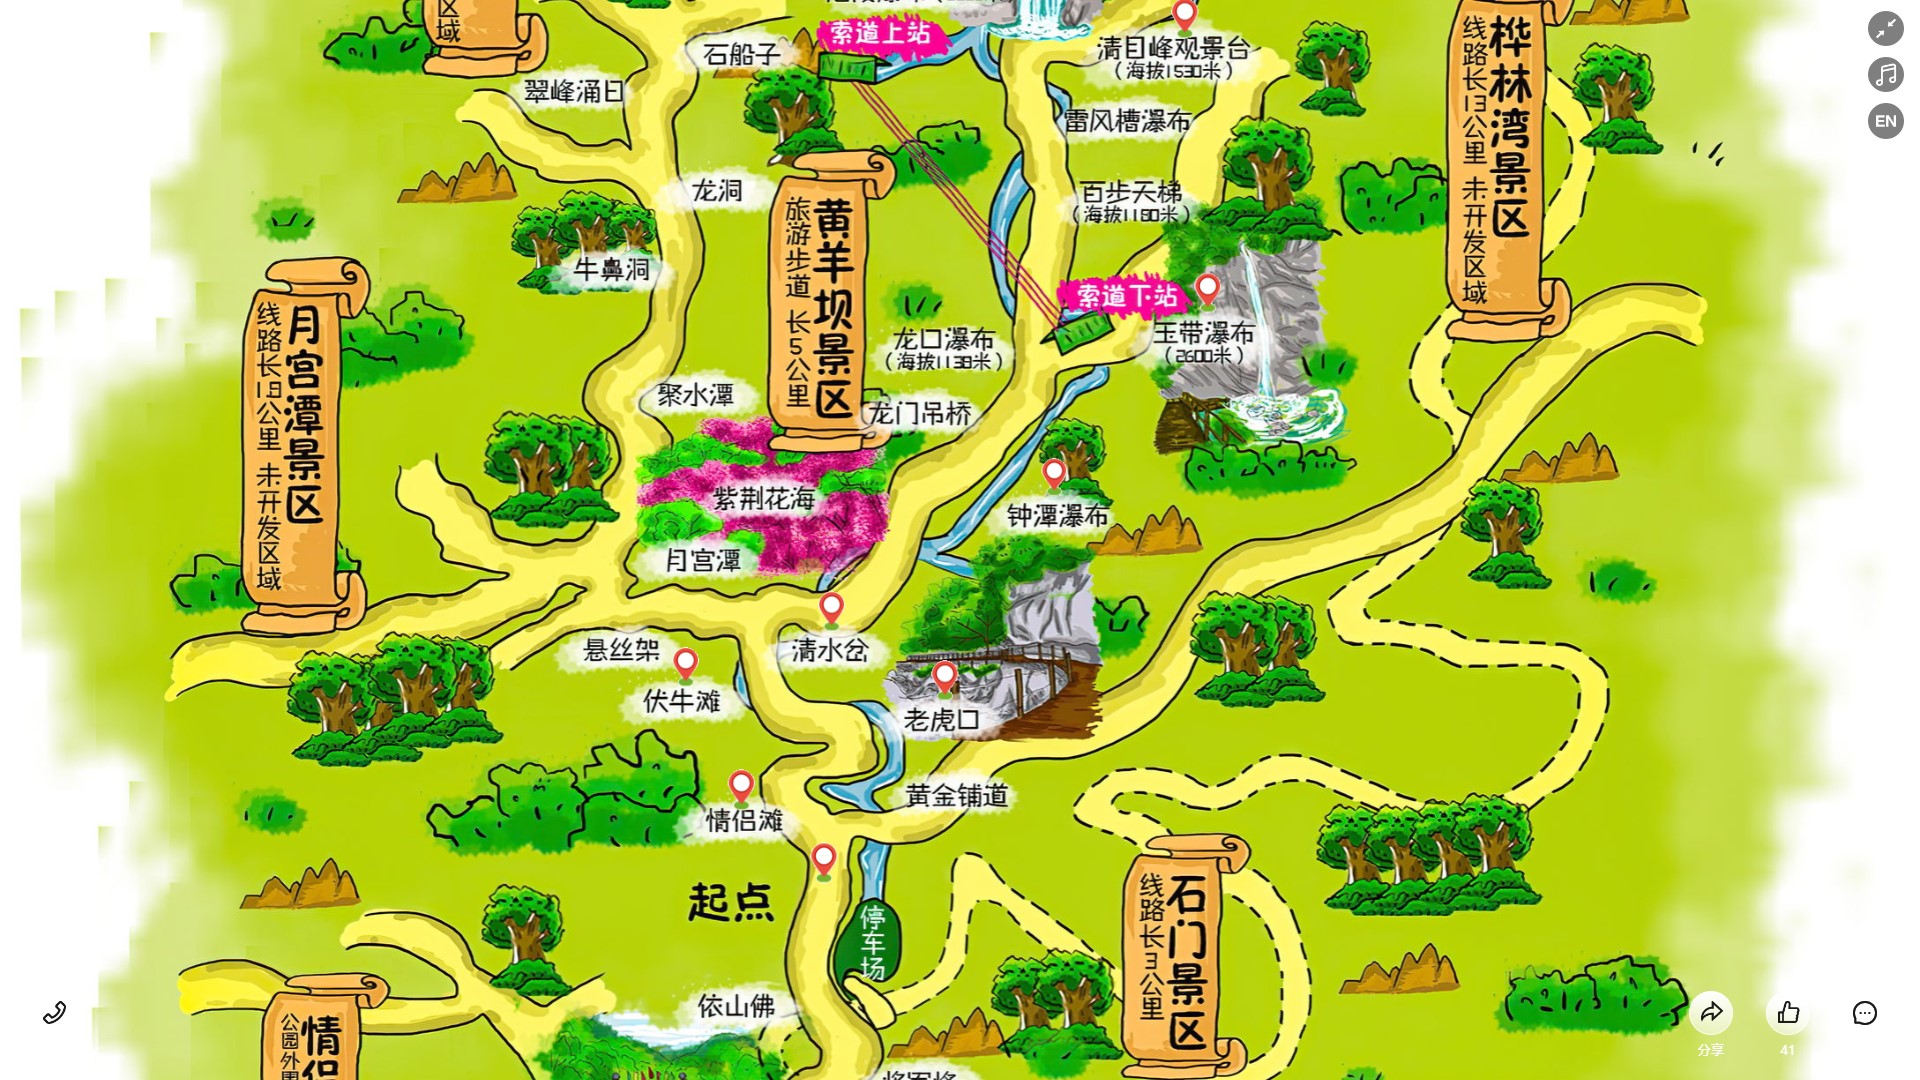 滨州景区导览系统